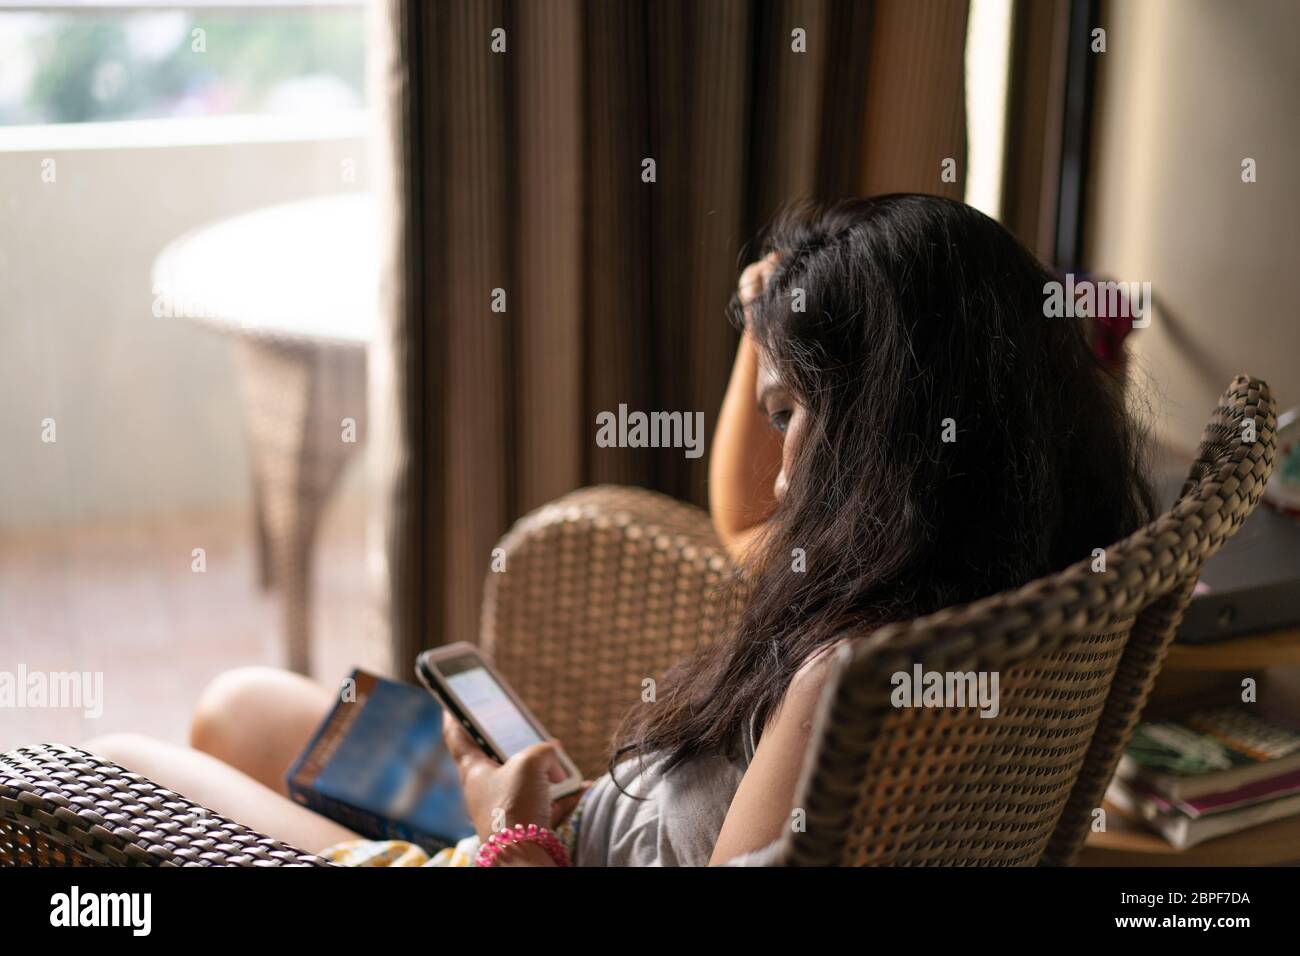 Immagine concettuale di noia o problemi di salute mentale come una donna seduta in una sedia fissa un telefono cellulare durante un periodo di quarantena nel COVID-19 Pandemic 2020 Foto Stock